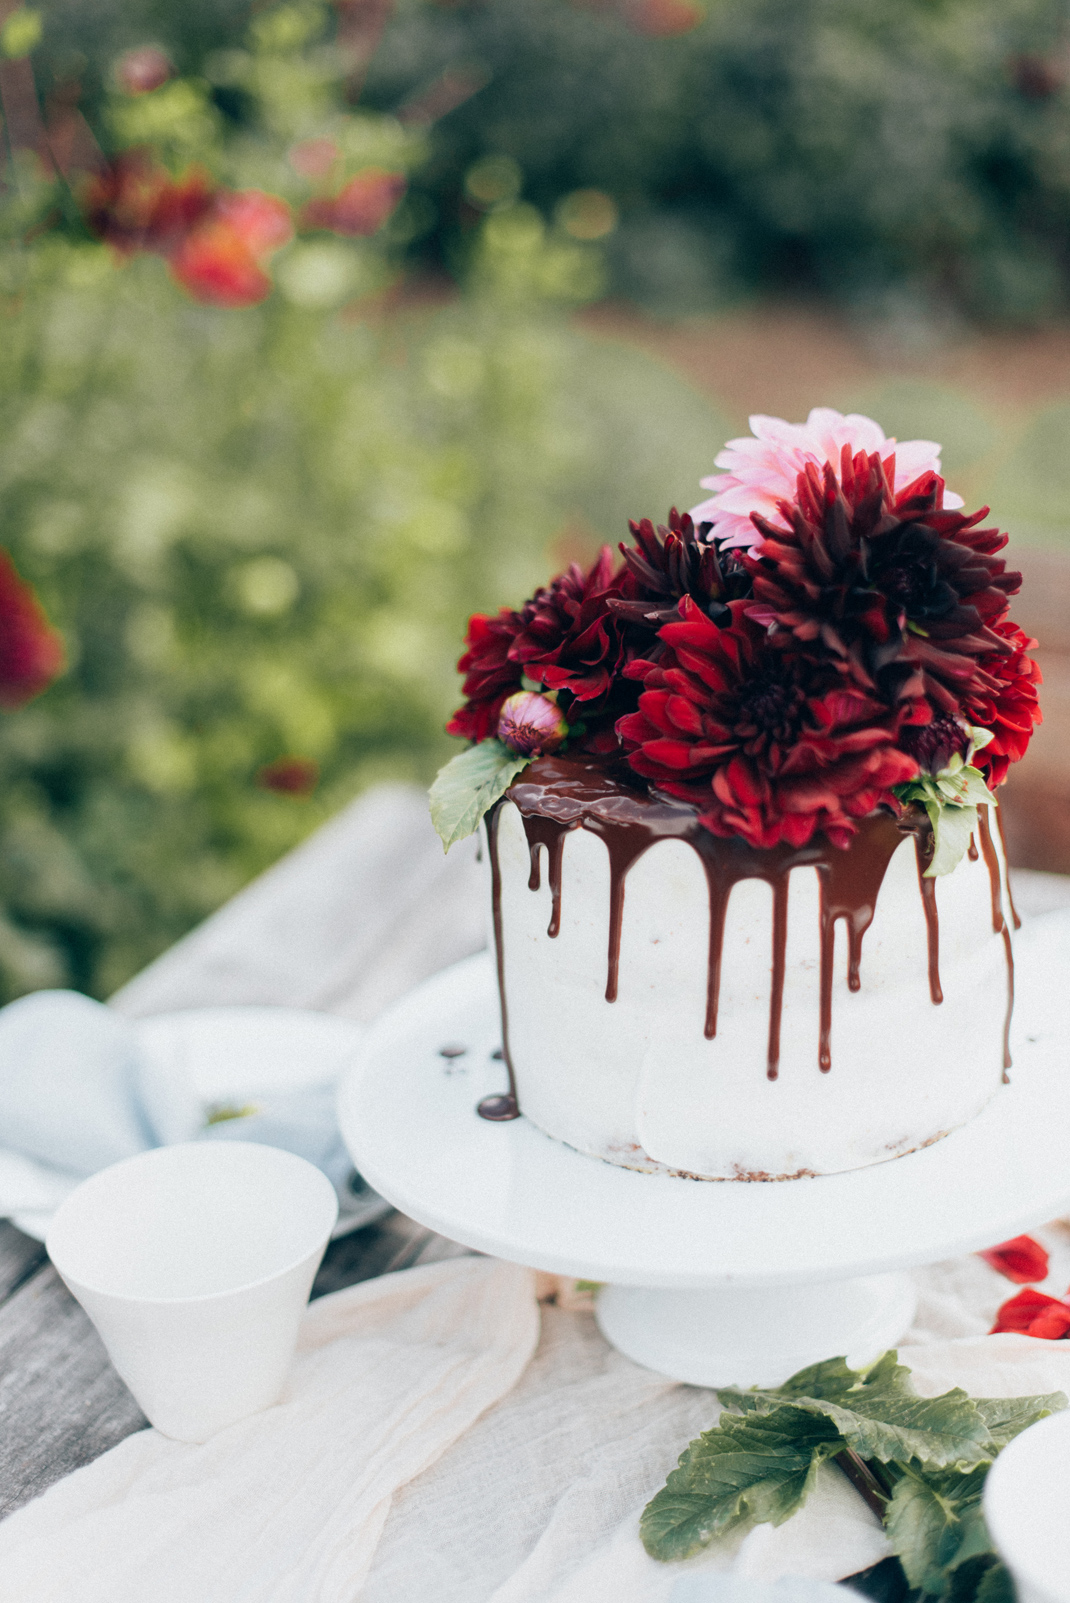 Silvia Fischer. Echte Kuchenliebe. Drip Cake Torte mit frischen Blumen